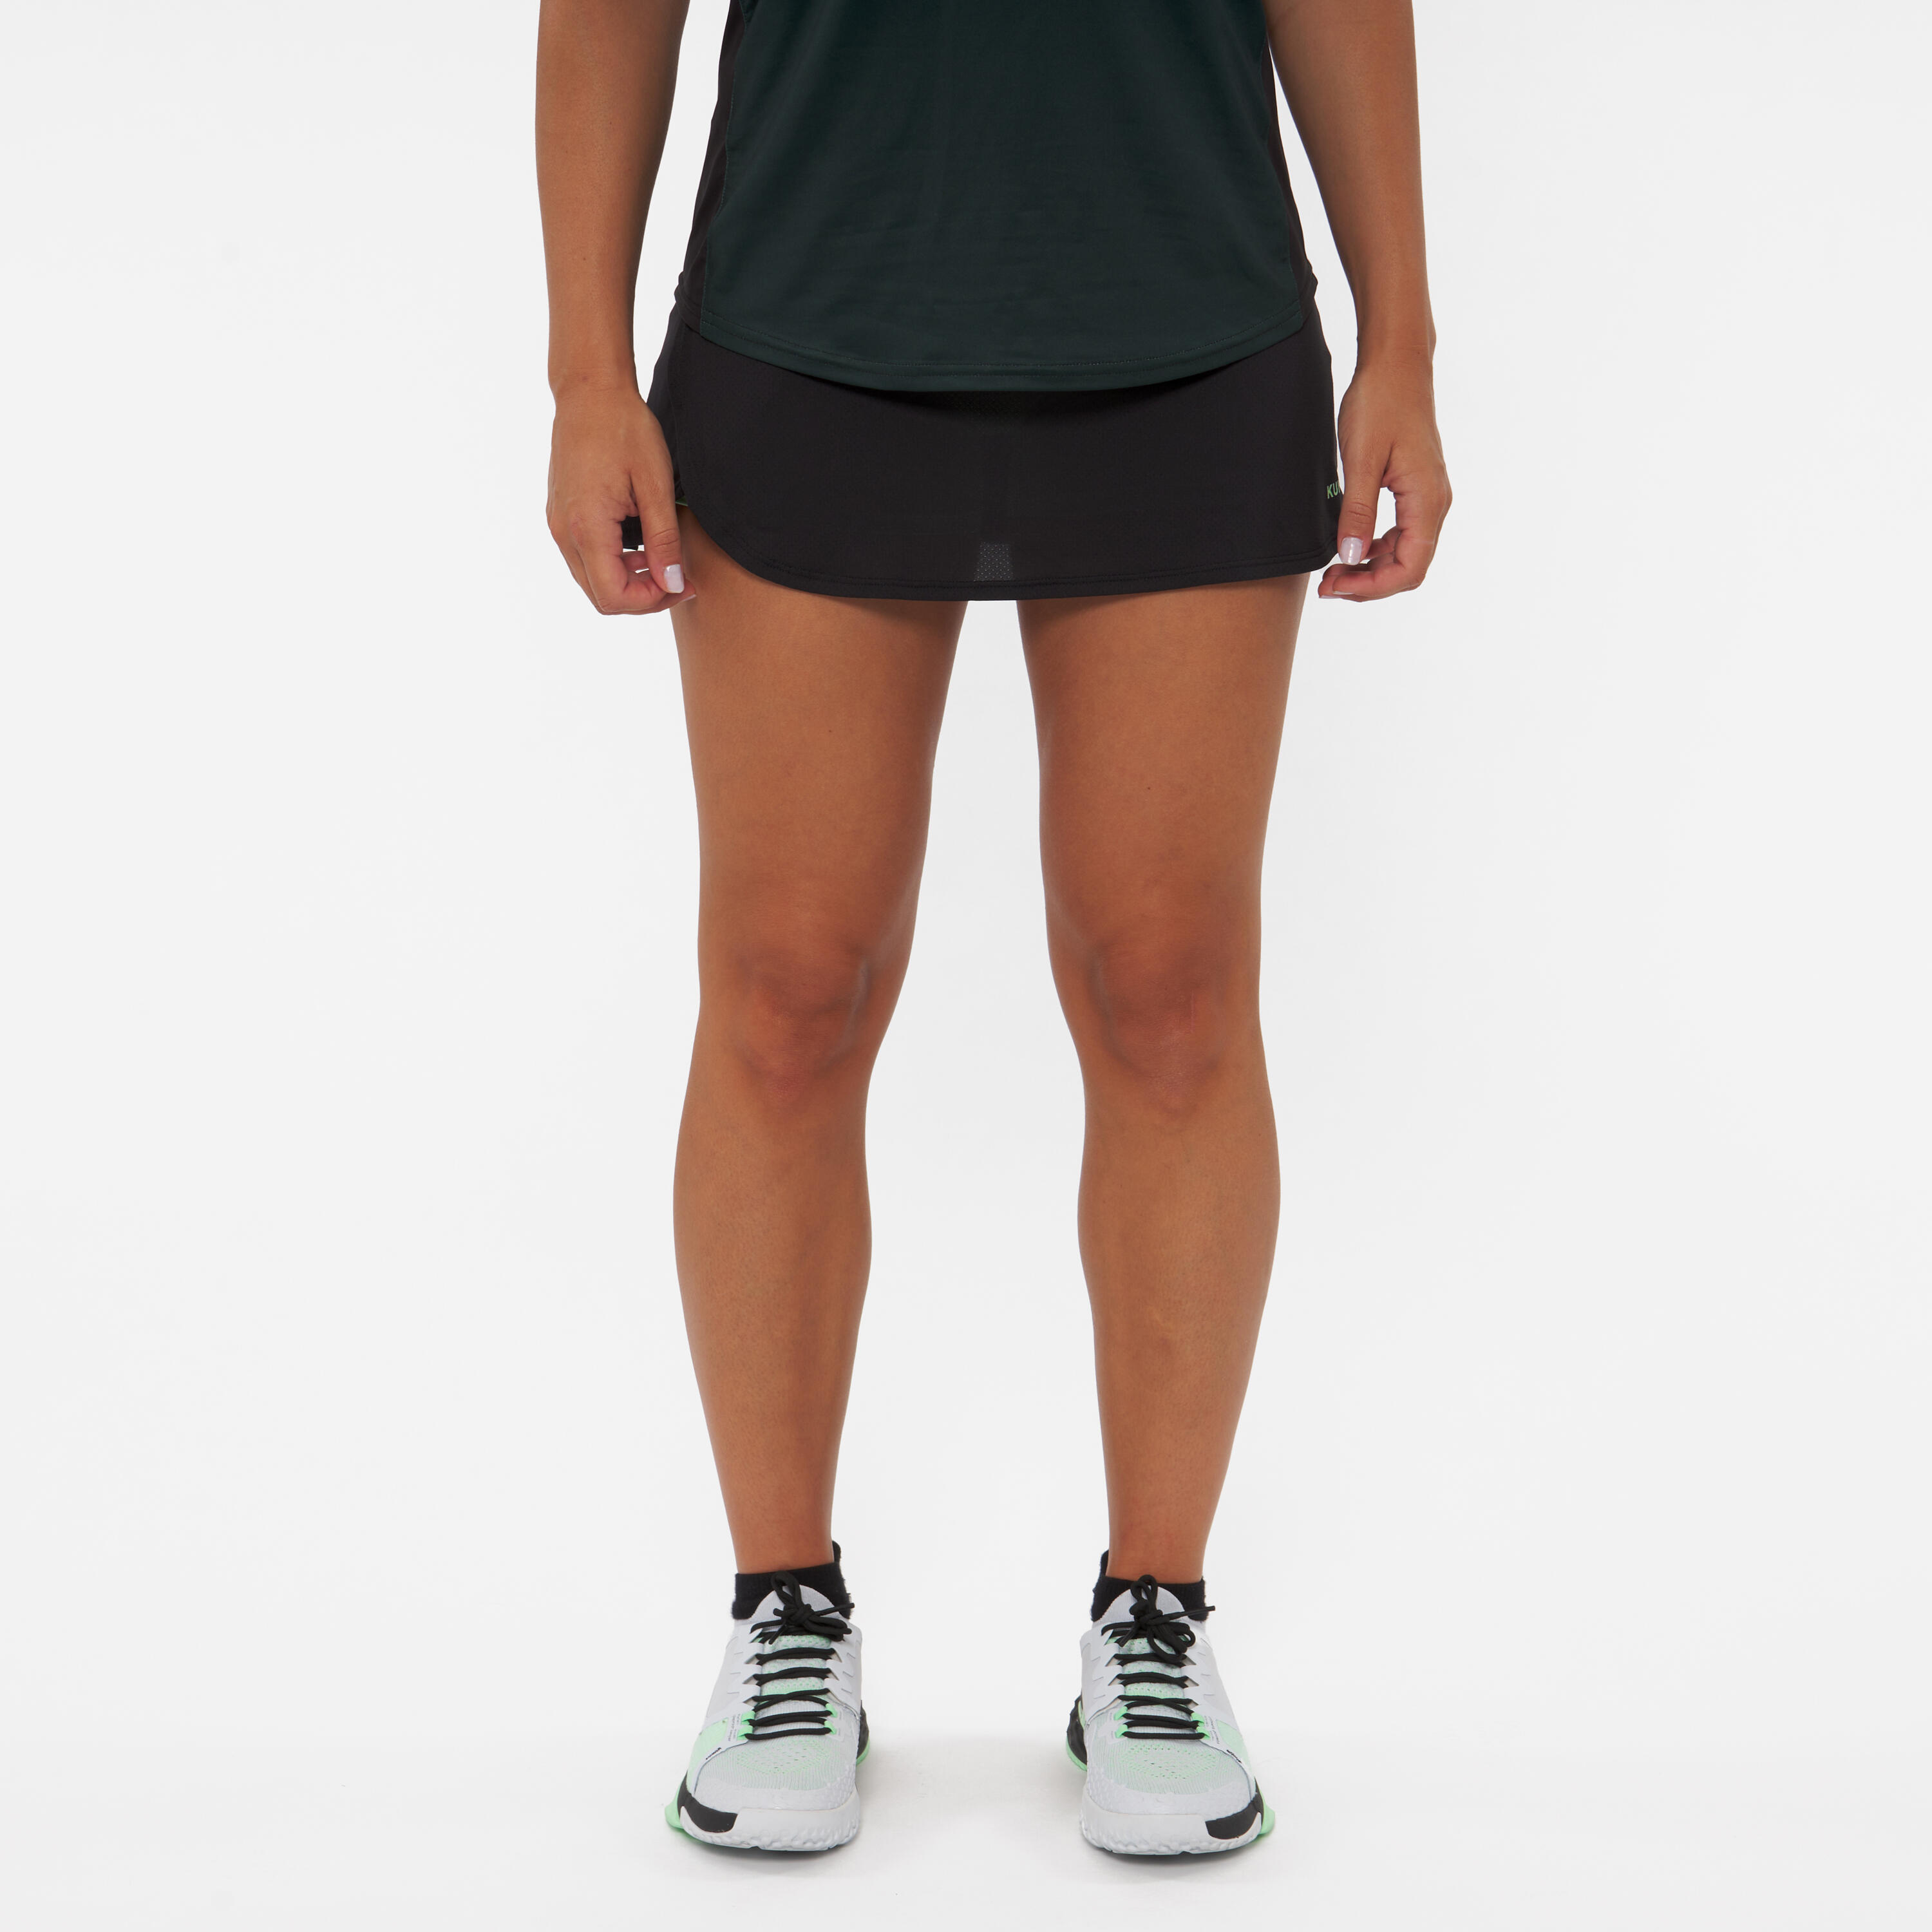 Women's Breathable Padel Skirt 500 - Green/Black 4/8